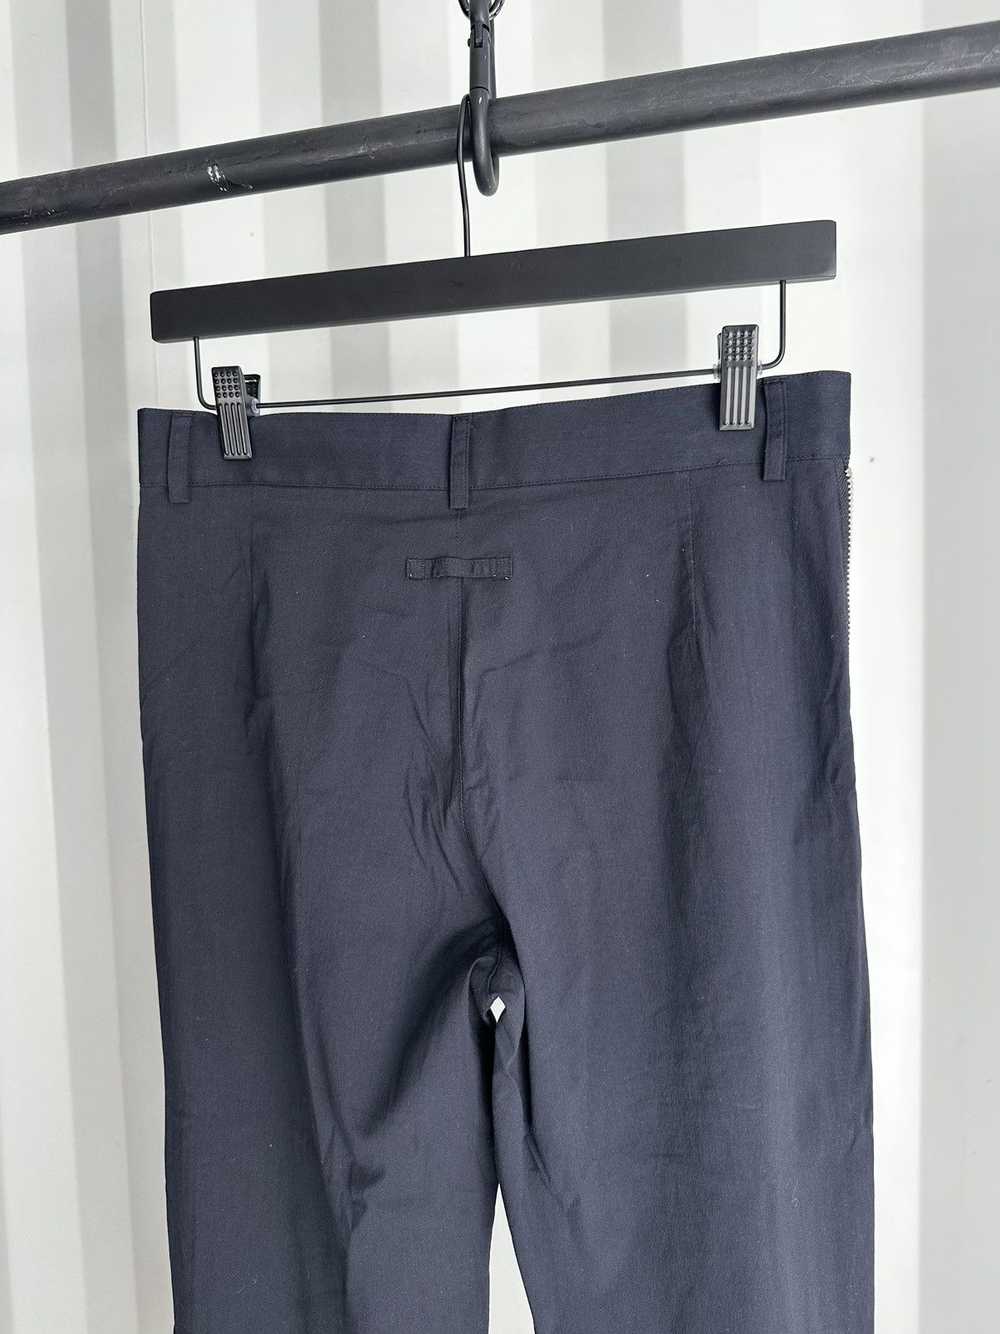 Jean Paul Gaultier Side Zip Wide Leg Trousers - image 6